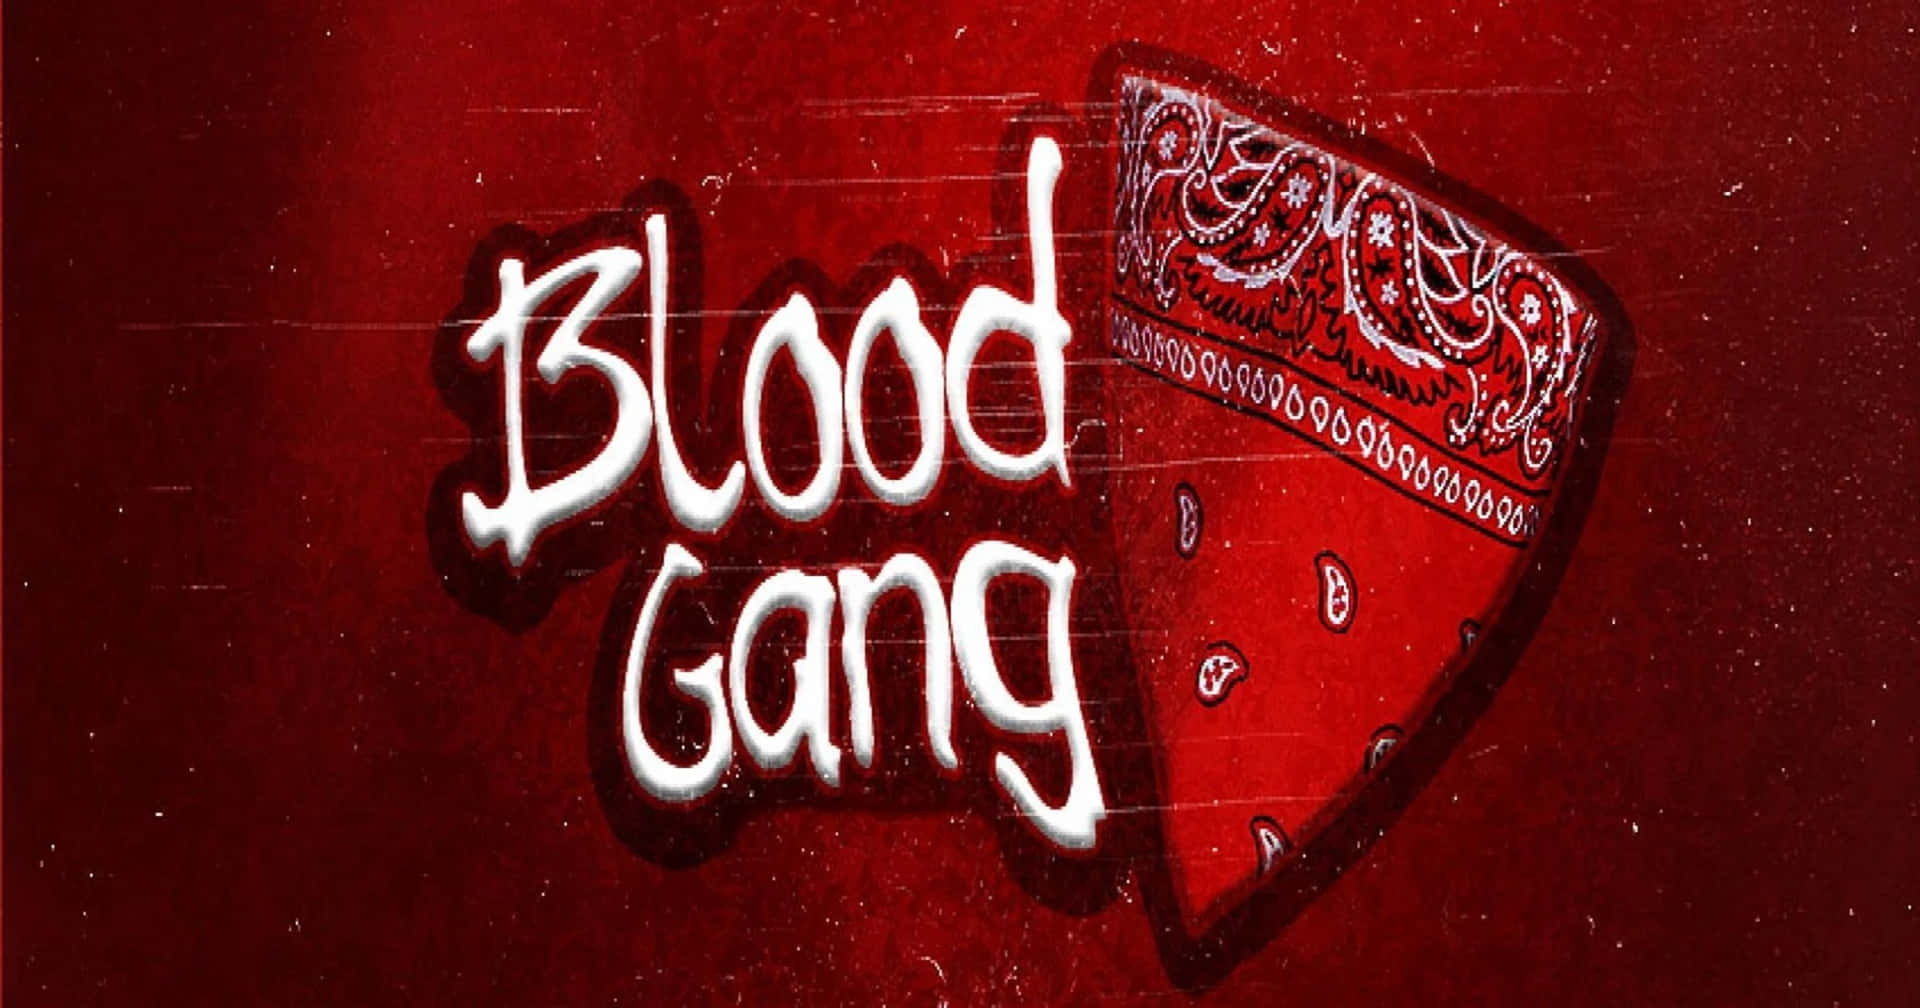 Blood Gang Wallpaper